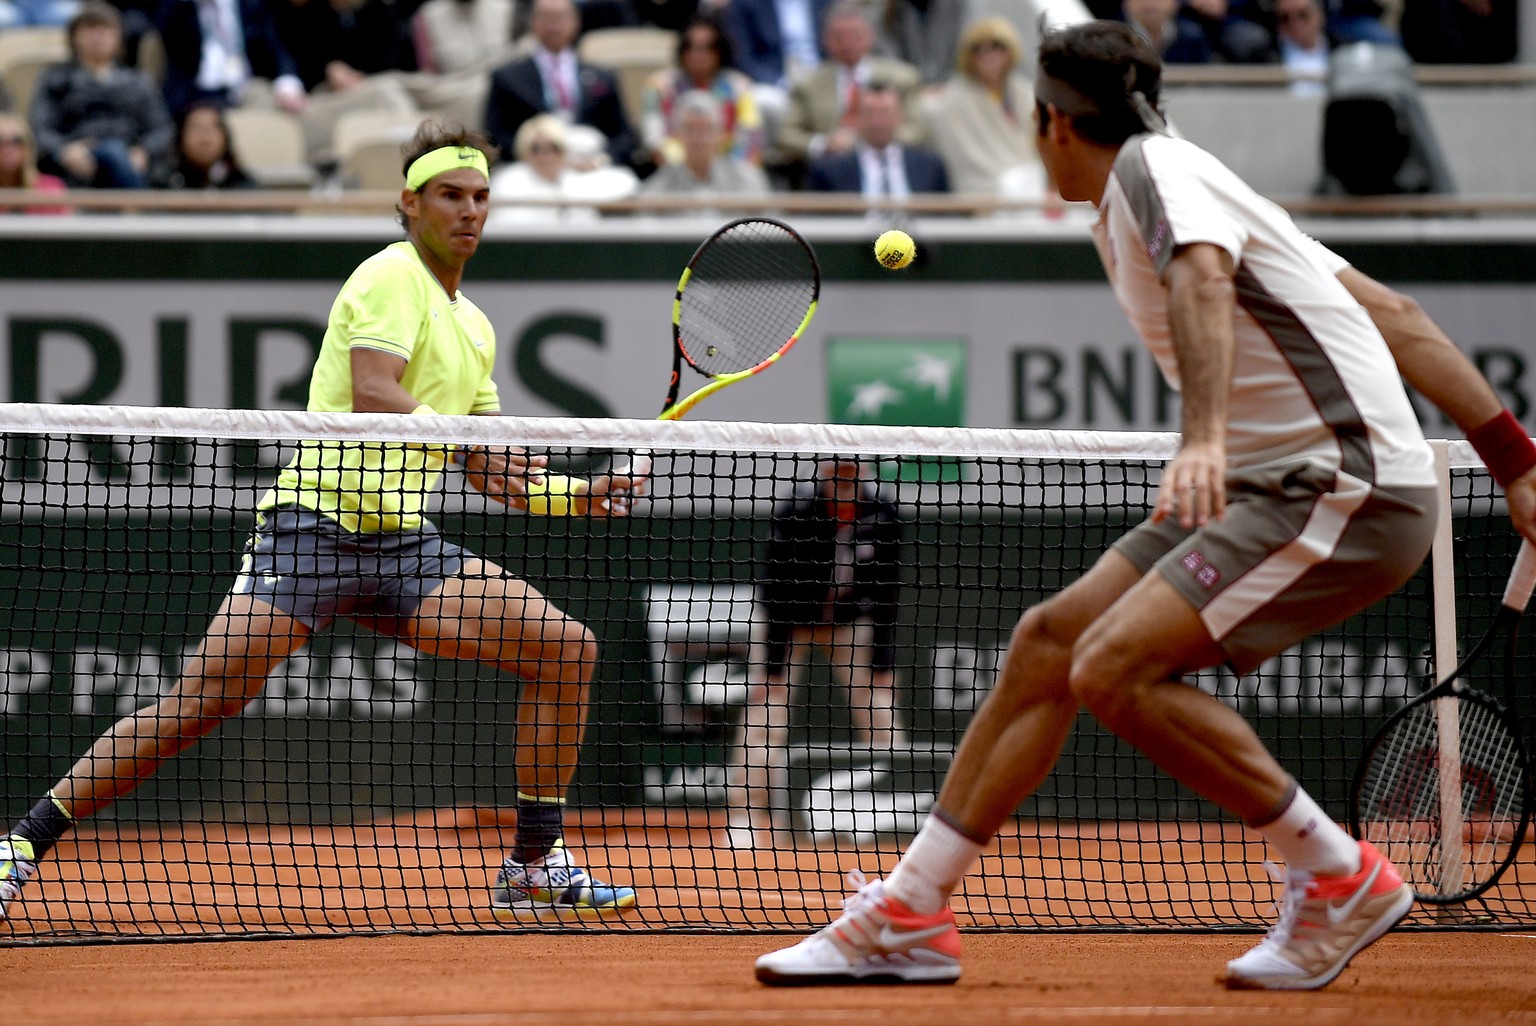 Der bislang letzte Match auf Sand: Federer im Halbfinal der French Open 2019 gegen Nadal.